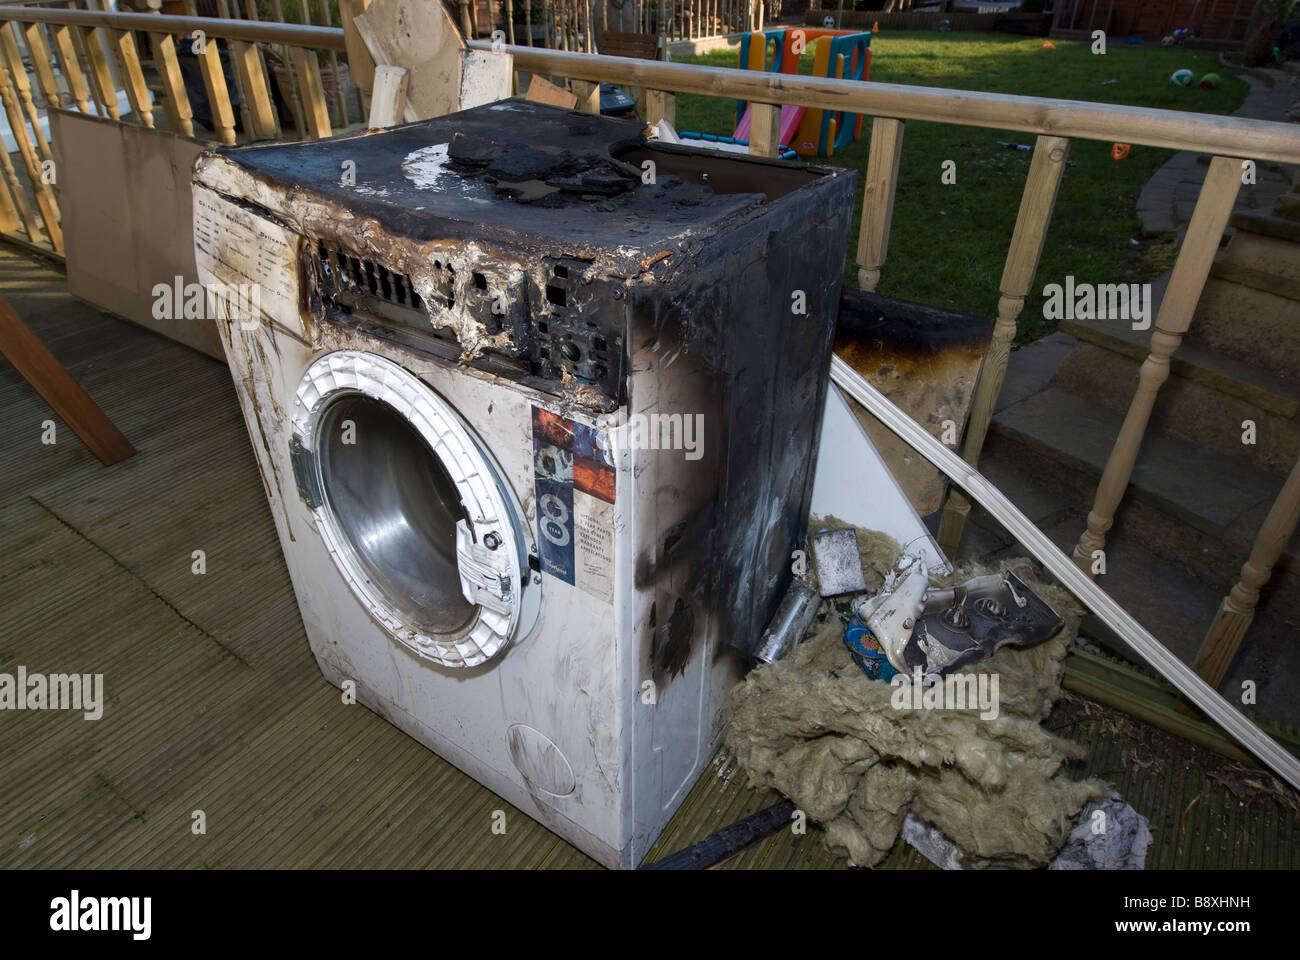 Washing machine fire immagini e fotografie stock ad alta risoluzione - Alamy